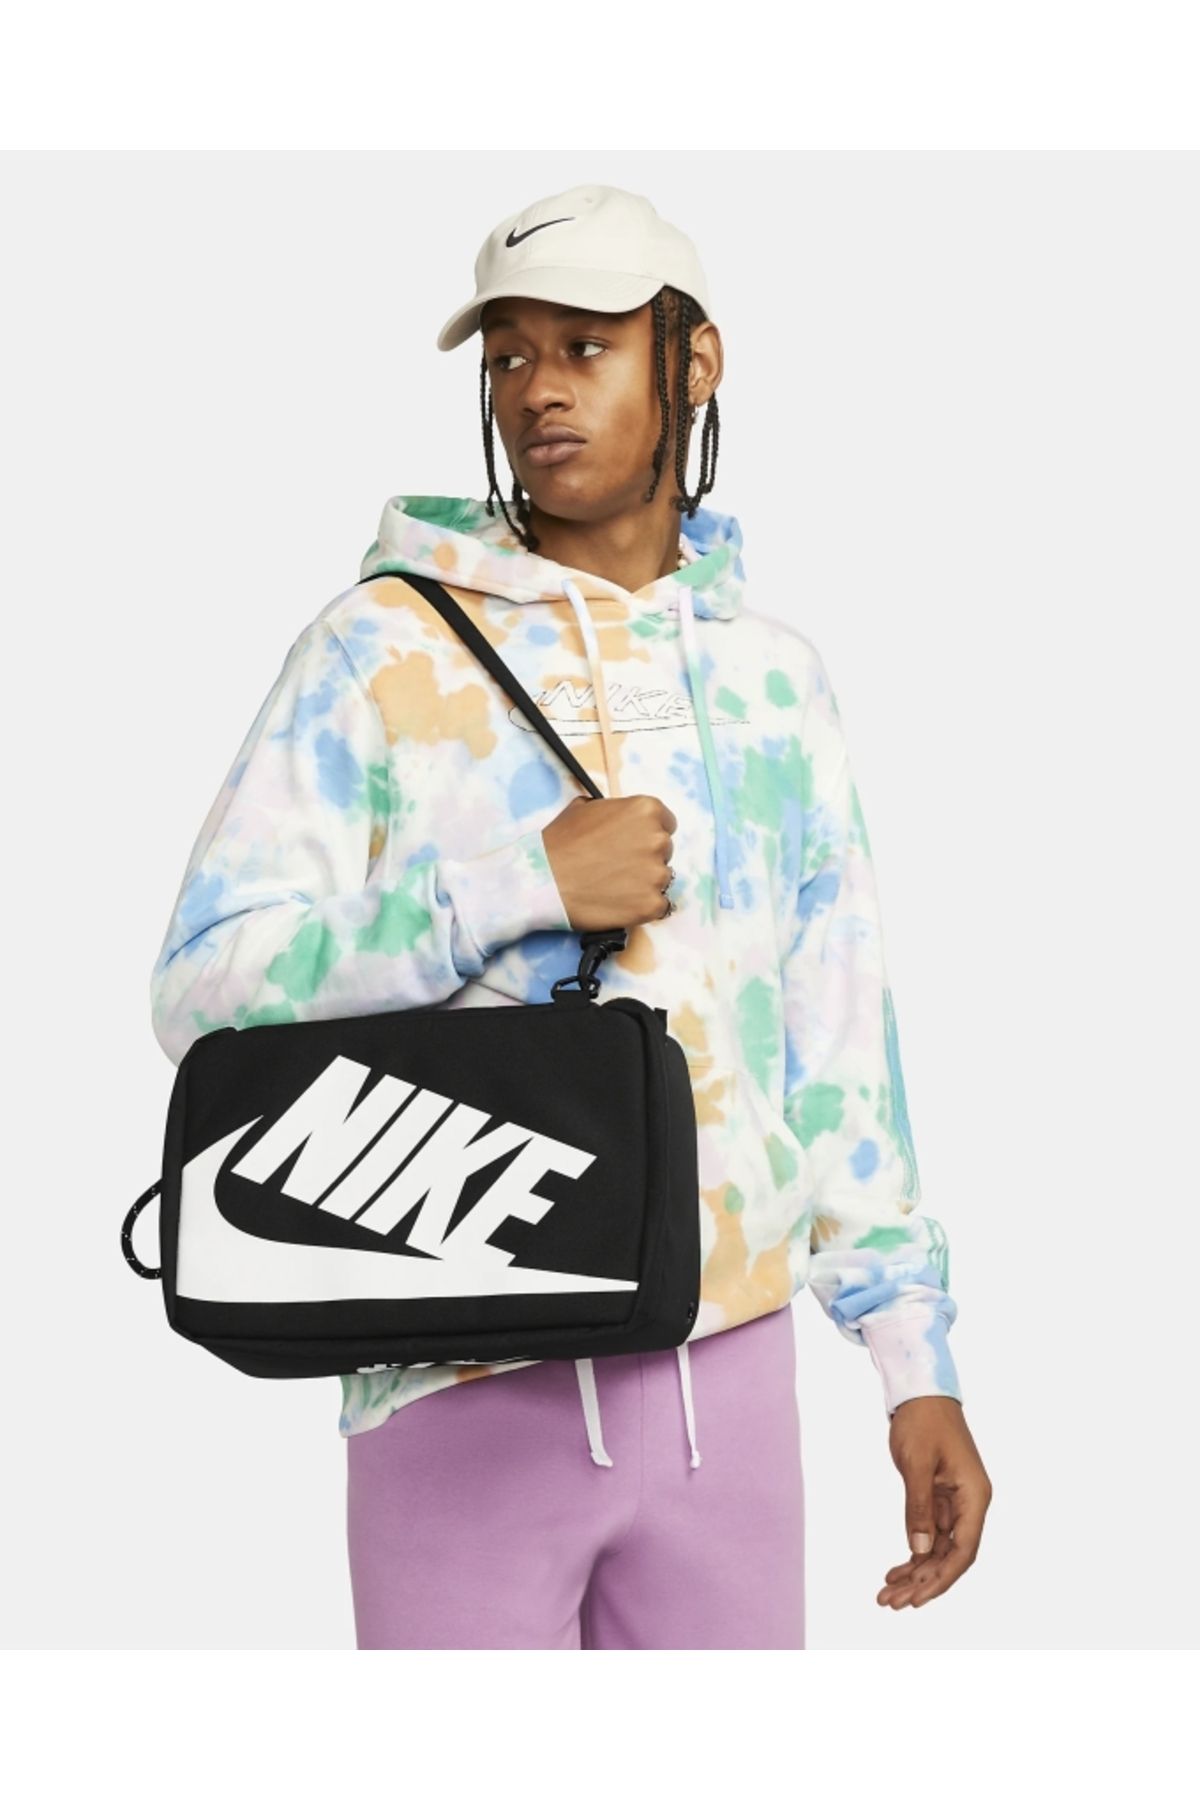 Nike Shoe Box Bag (12L) Large Spor Omuz Çantası